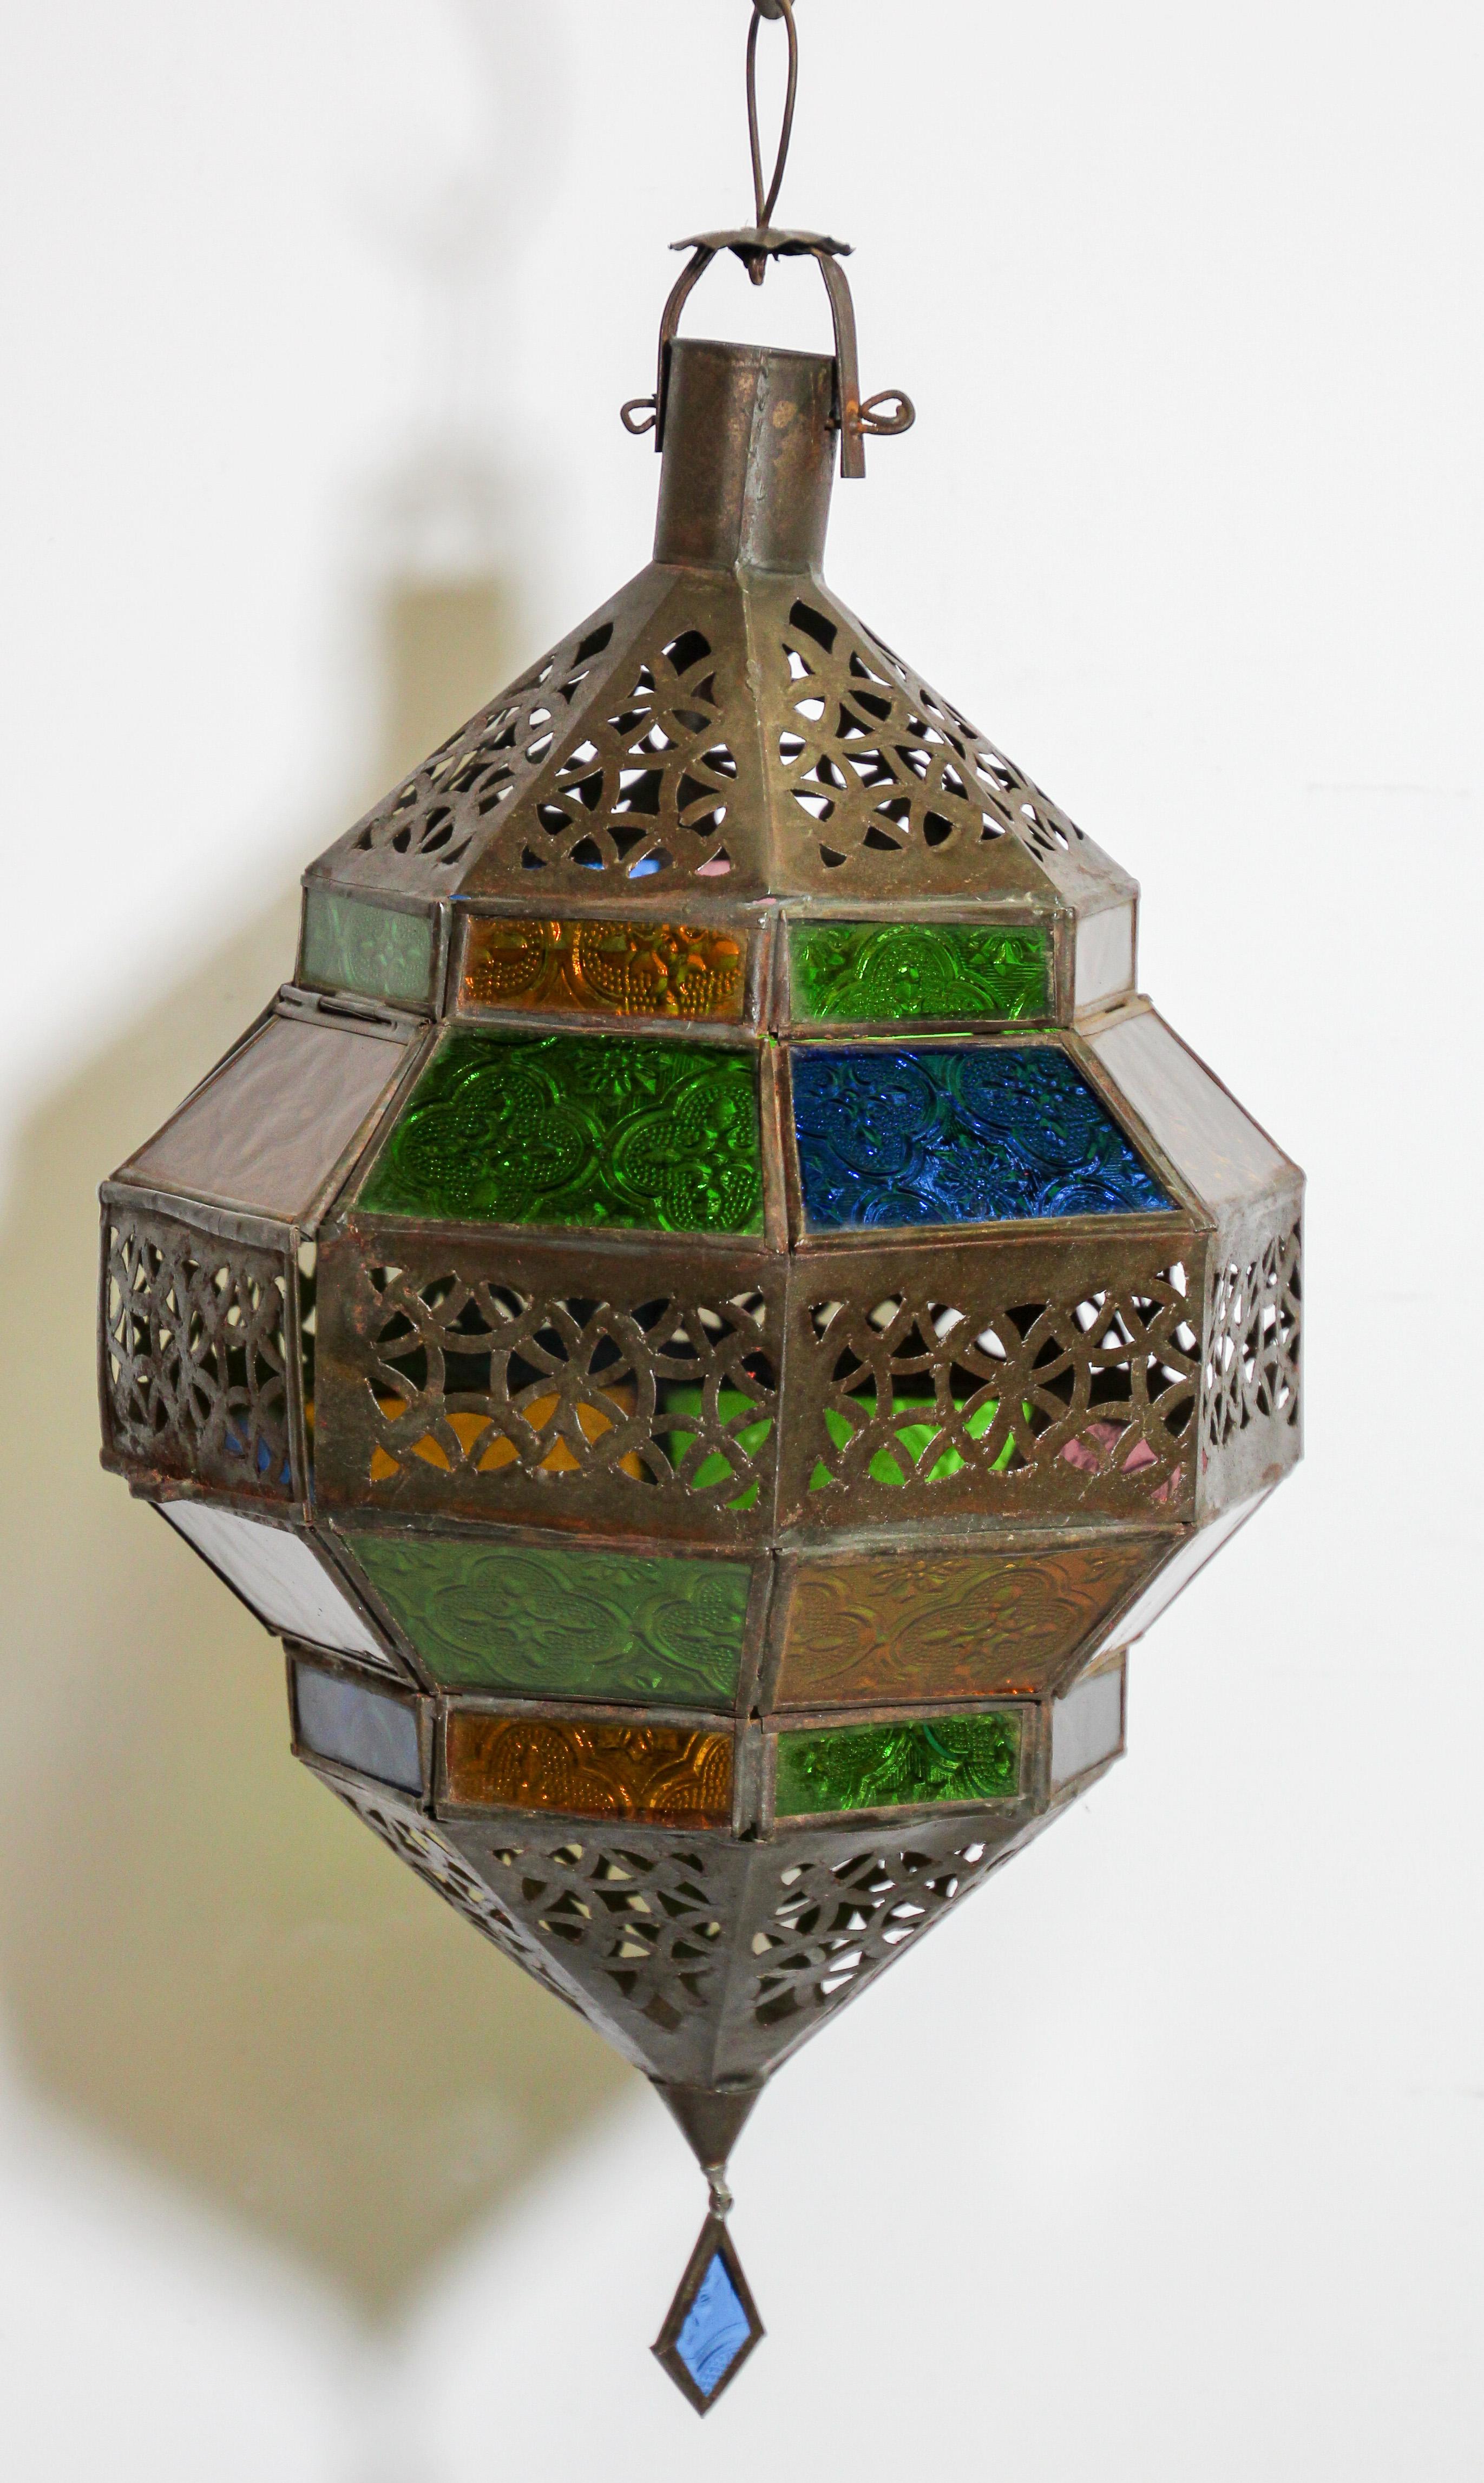 Lanterne marocaine en métal et verre multicolore, lanterne en verre ambré, vert, lavande, bleu en forme de diamant.
Lanterne marocaine de forme octogonale avec finition en métal couleur rouille et verre bleu.
Le haut et le bas sont ornés de motifs